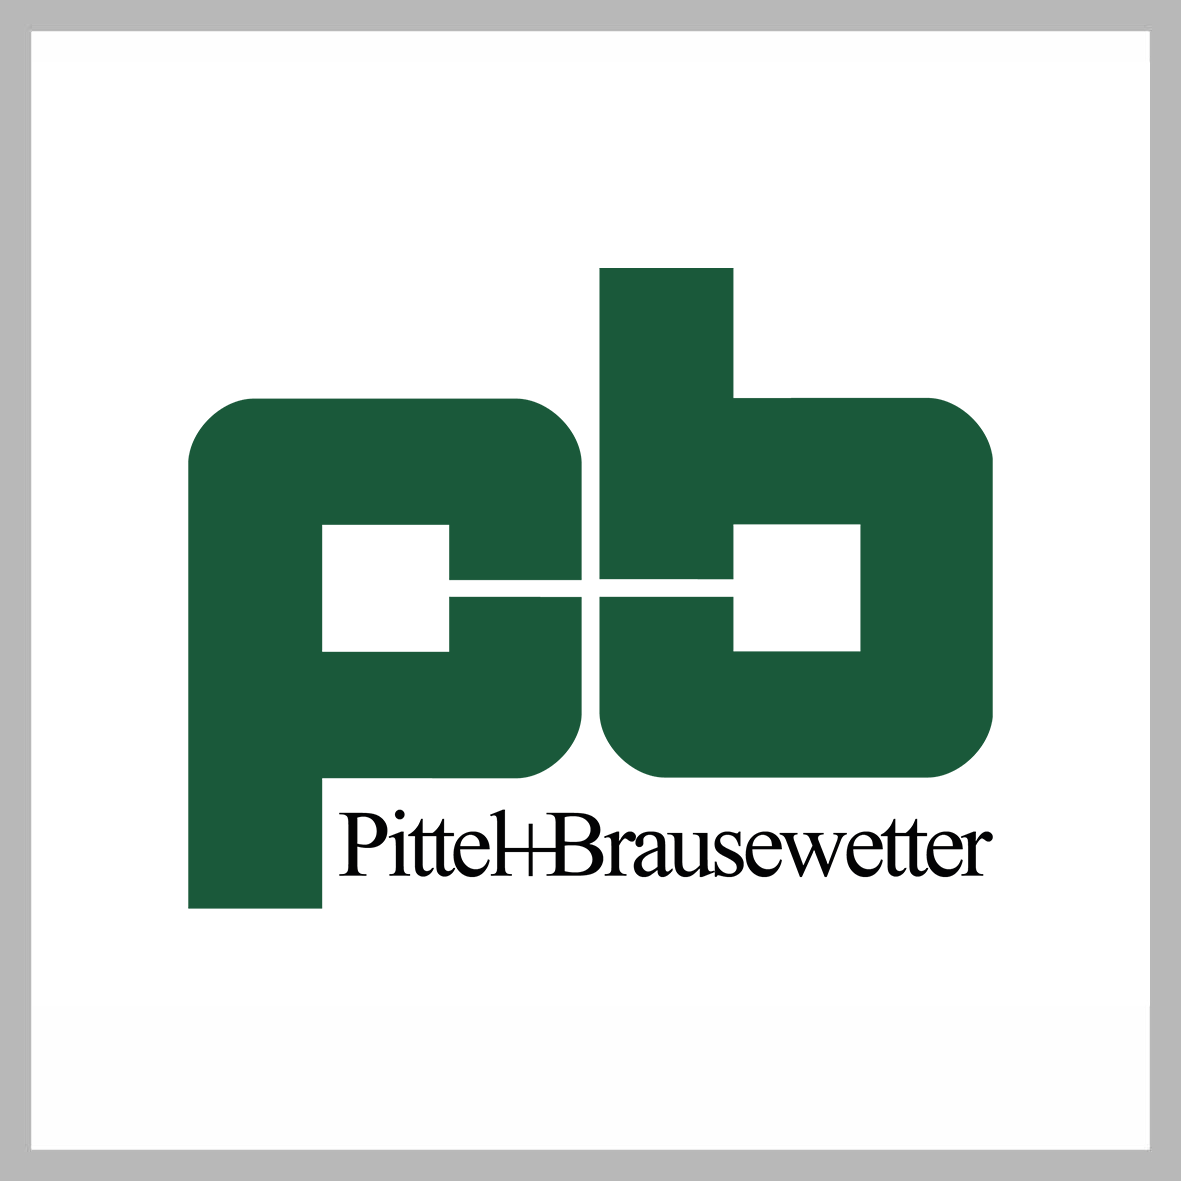 Logo Pittel+Brausewetter in Farbe auf weiß, quadratisch, grau umrandet